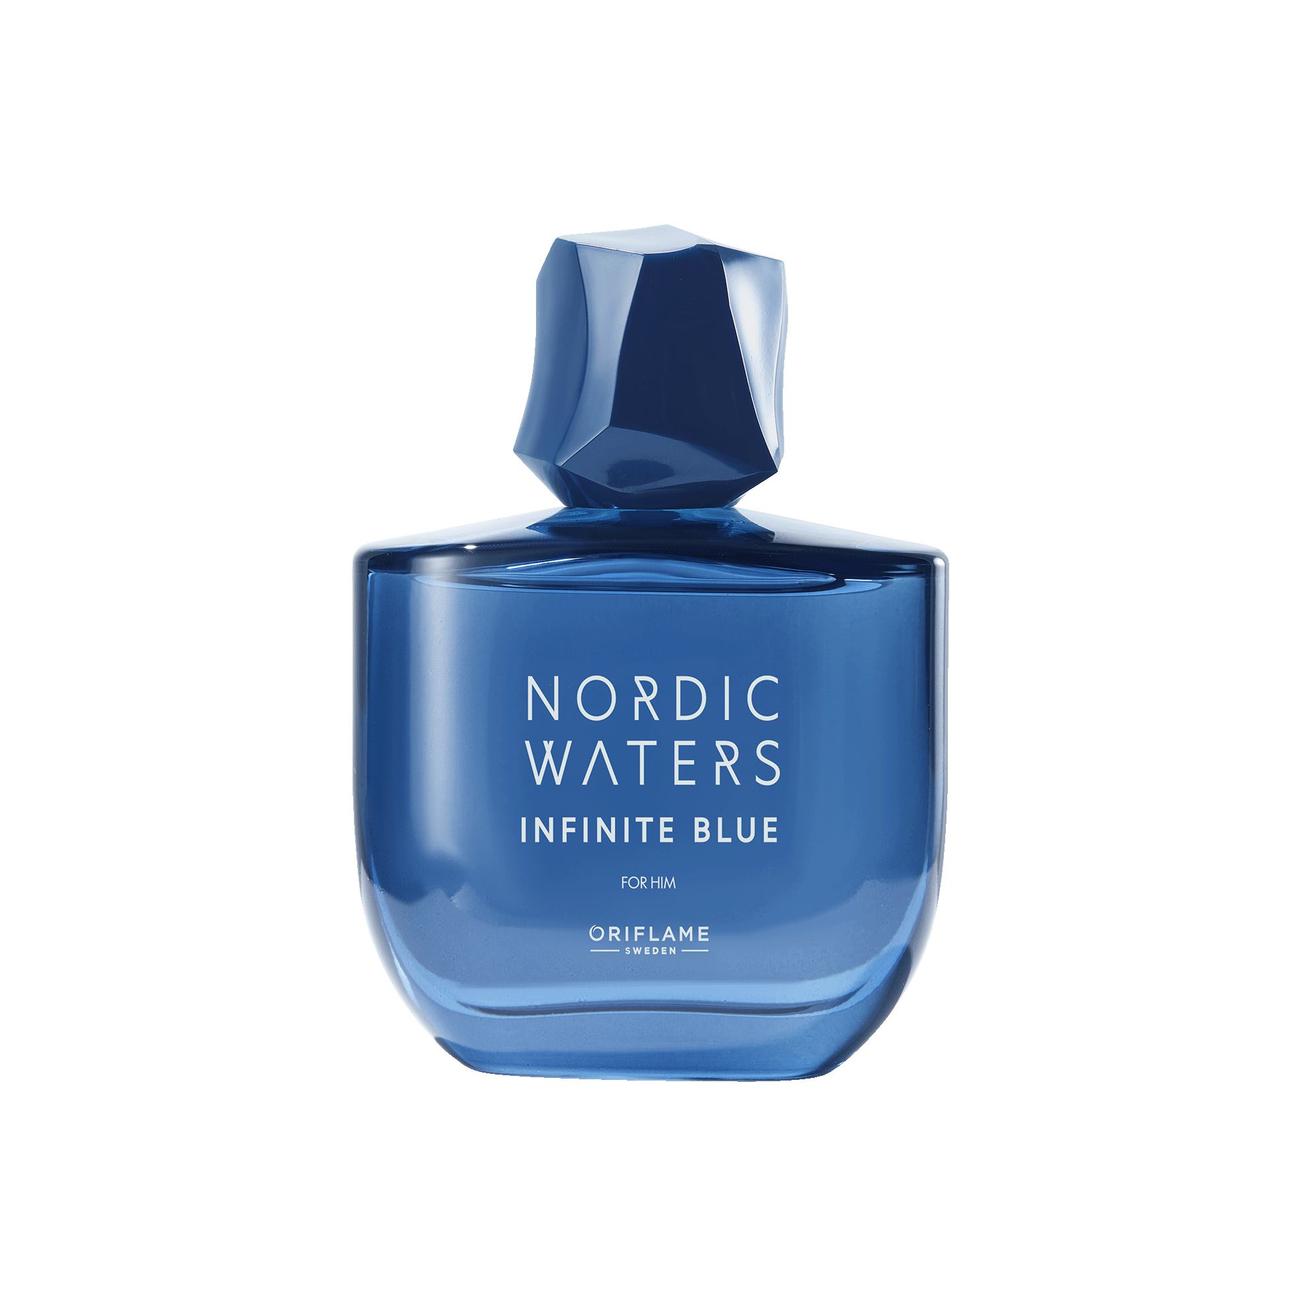 Προσφορά Ανδρικό Άρωμα Nordic Waters Infinite Blue EdP για 21,99€ σε ORIFLAME